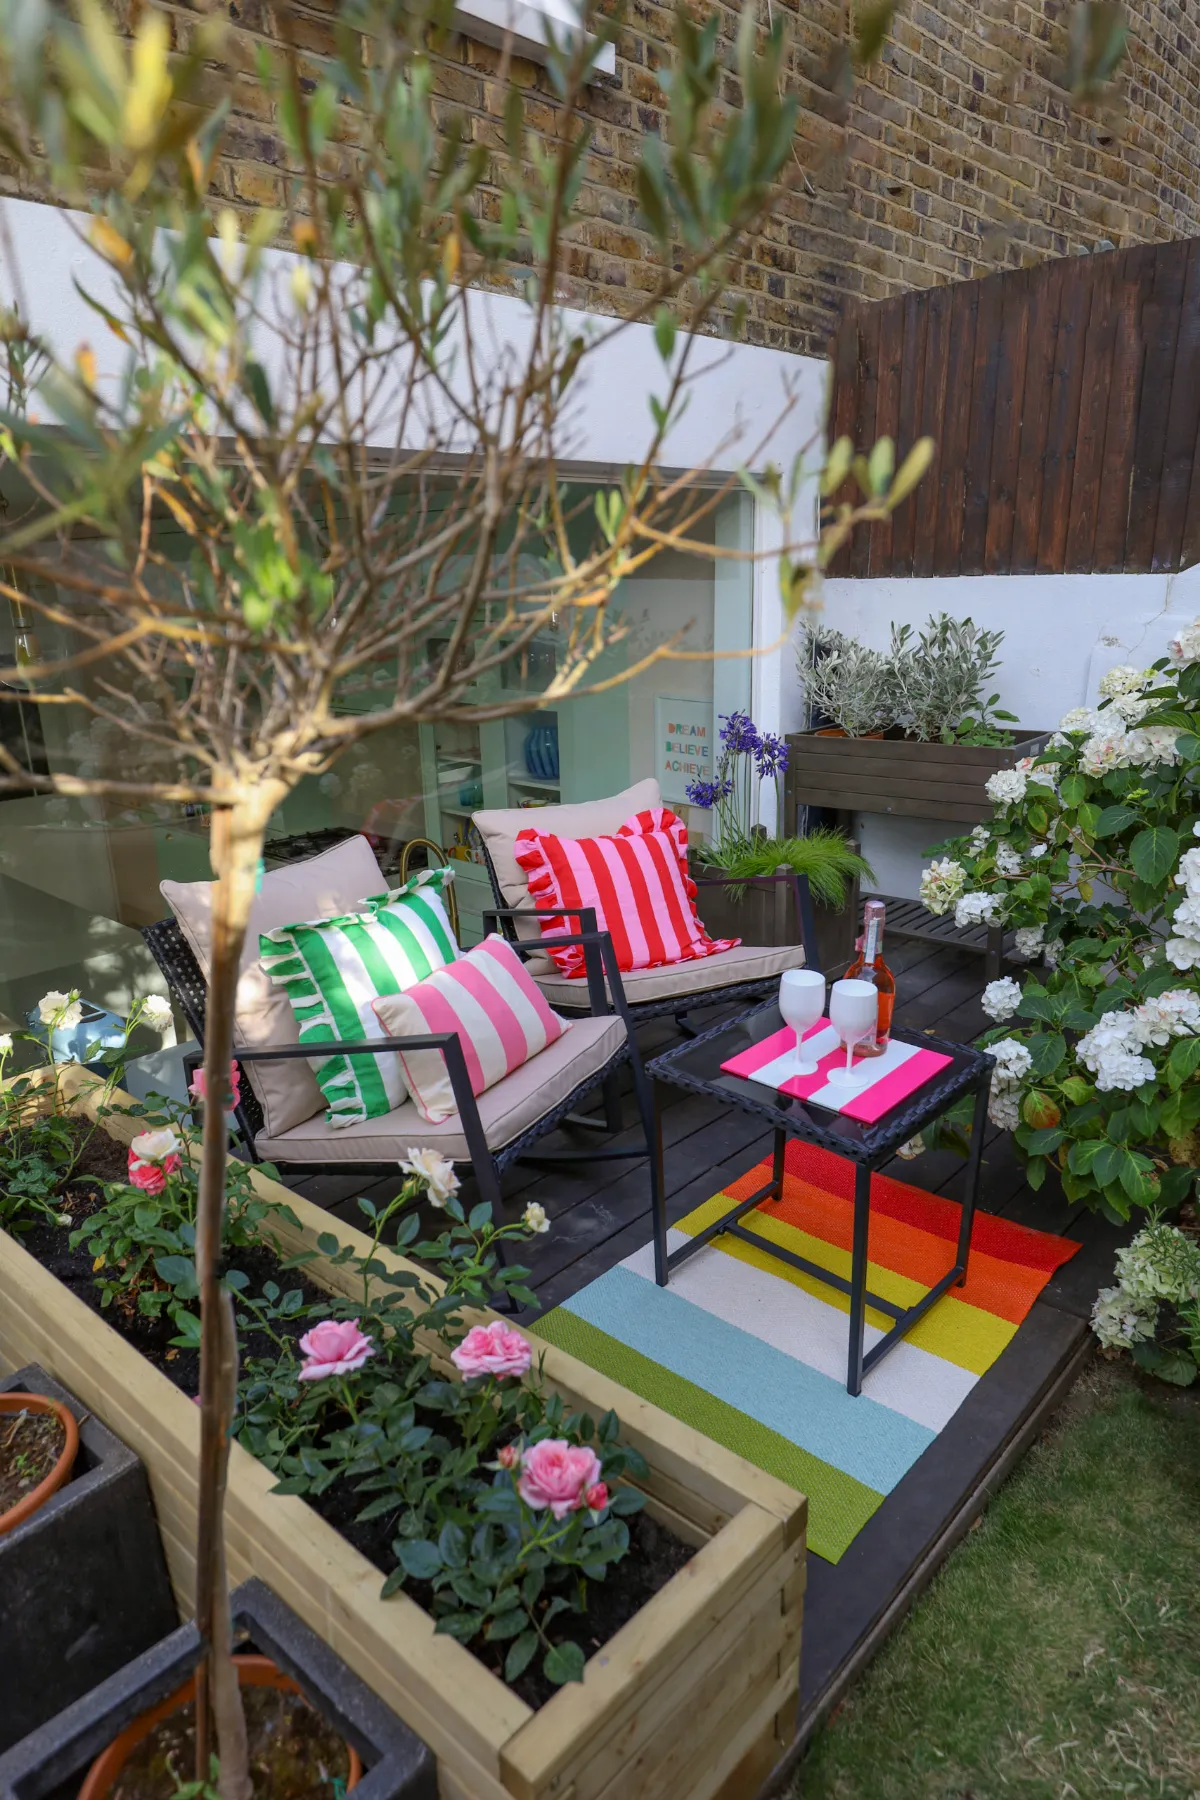 amenagement terrasse exterieure petite taille en bois avec mobilier de jardin minimaliste et vegetation autour